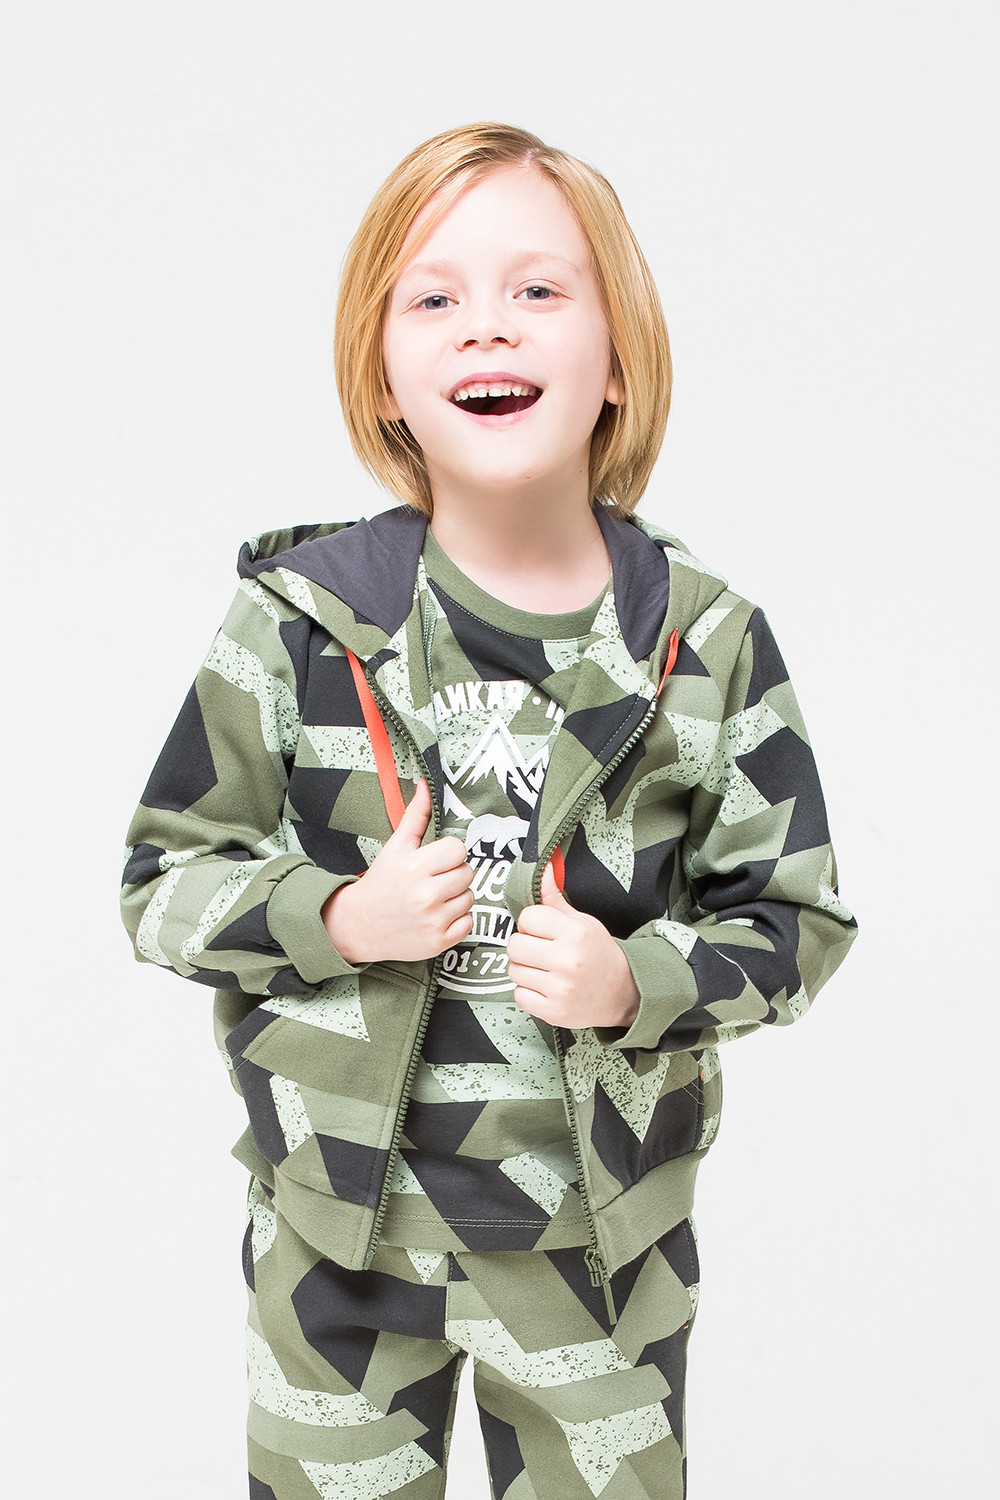 картинка Куртка для мальчика Crockid К 301144 темно-оливковый, геометрия к1255 от магазина детских товаров ALiSa